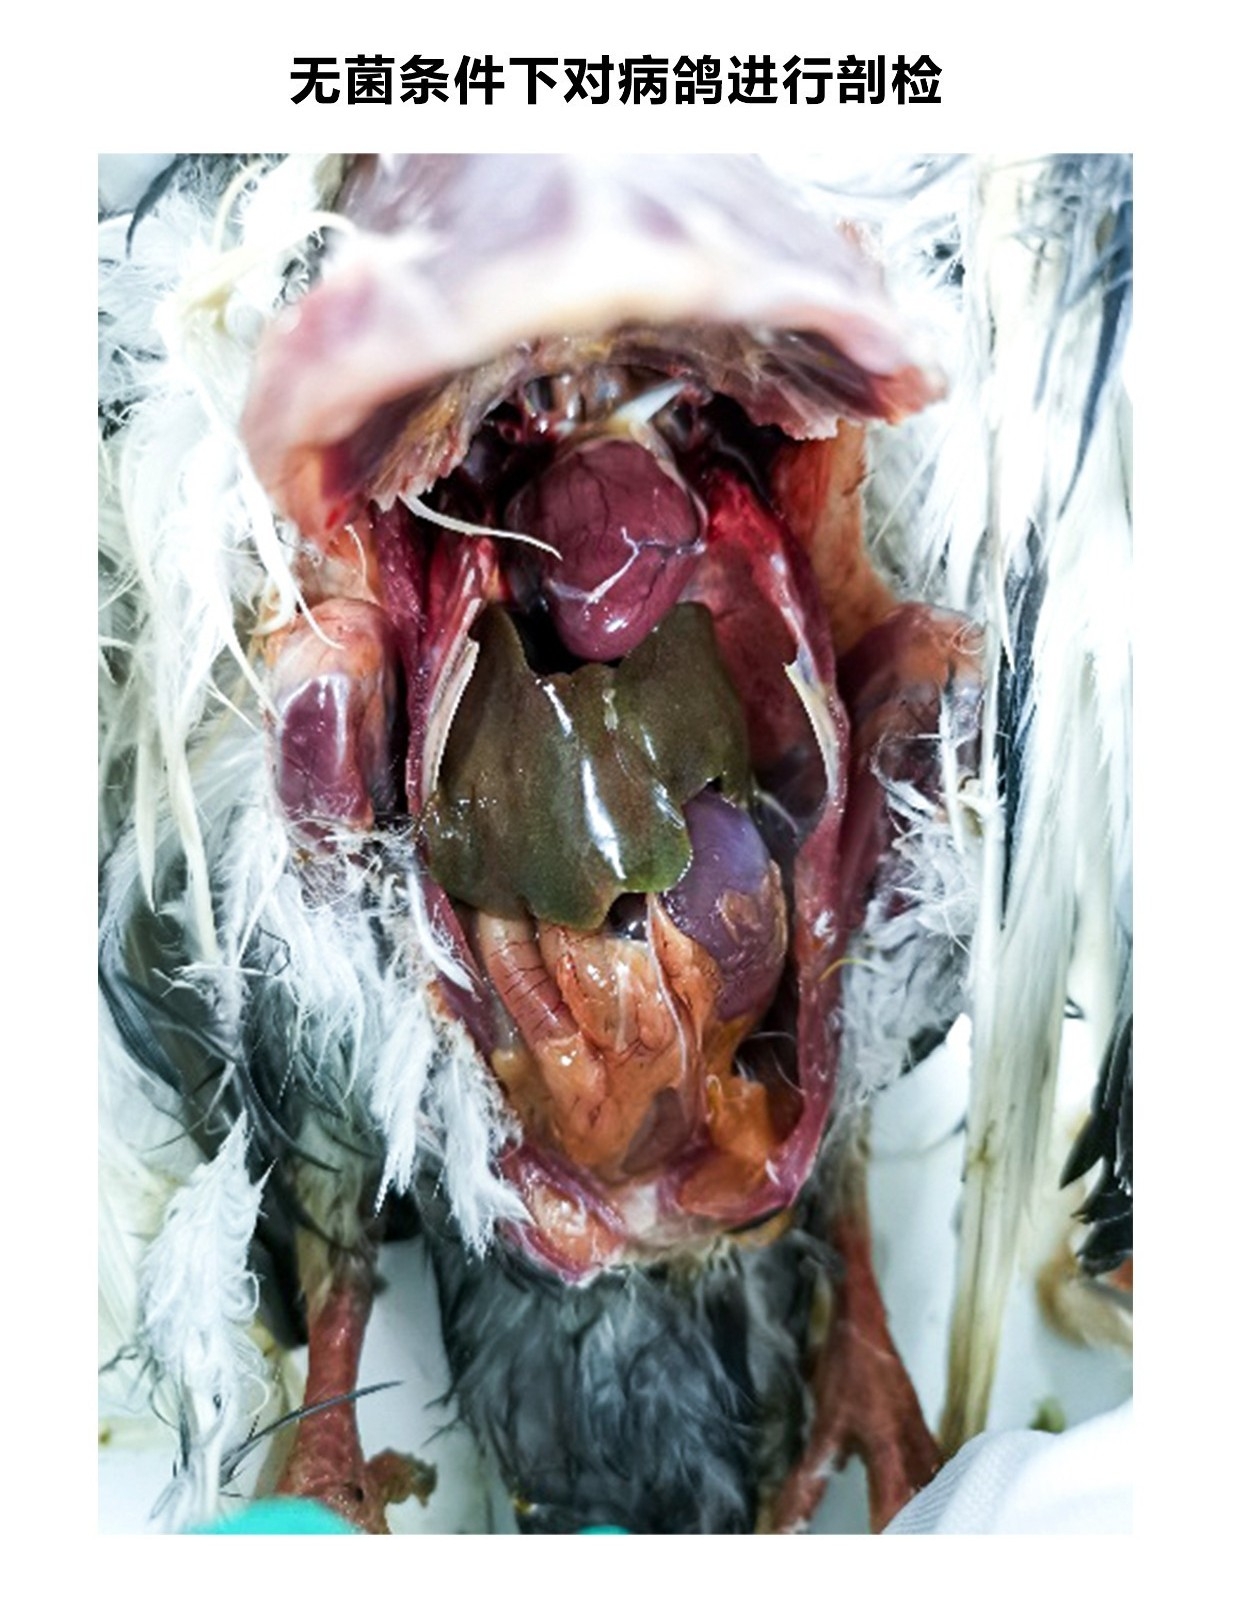 鸽子沙门氏菌症状图片图片